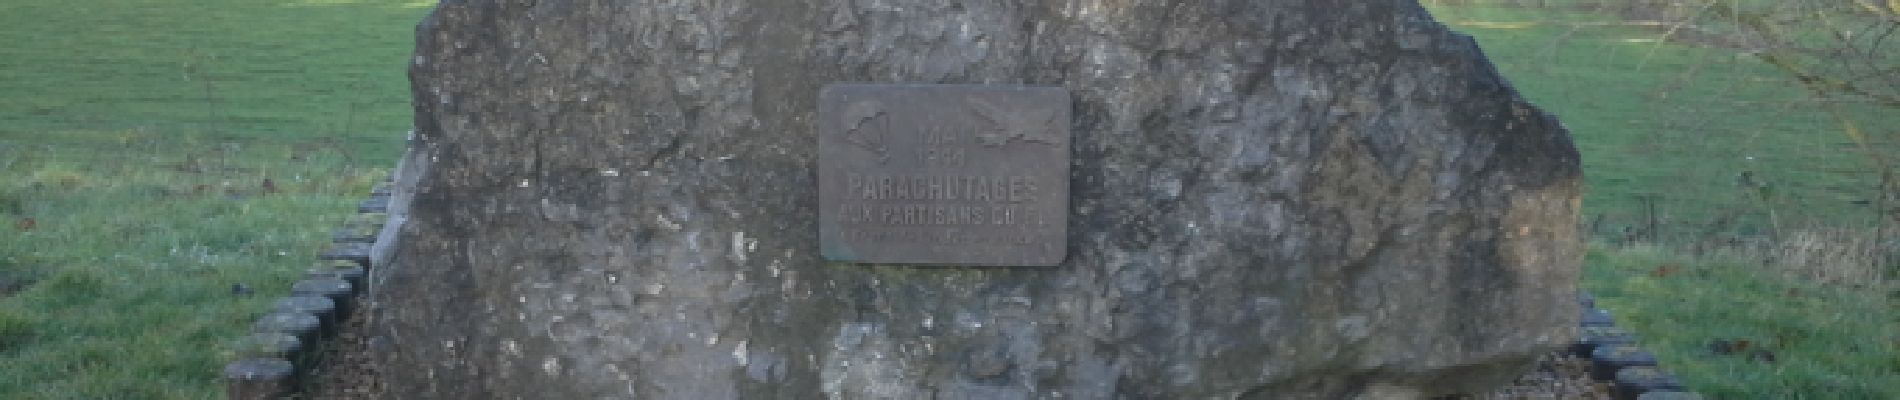 POI Hotton - Monument dédié aux parachutistes - Photo